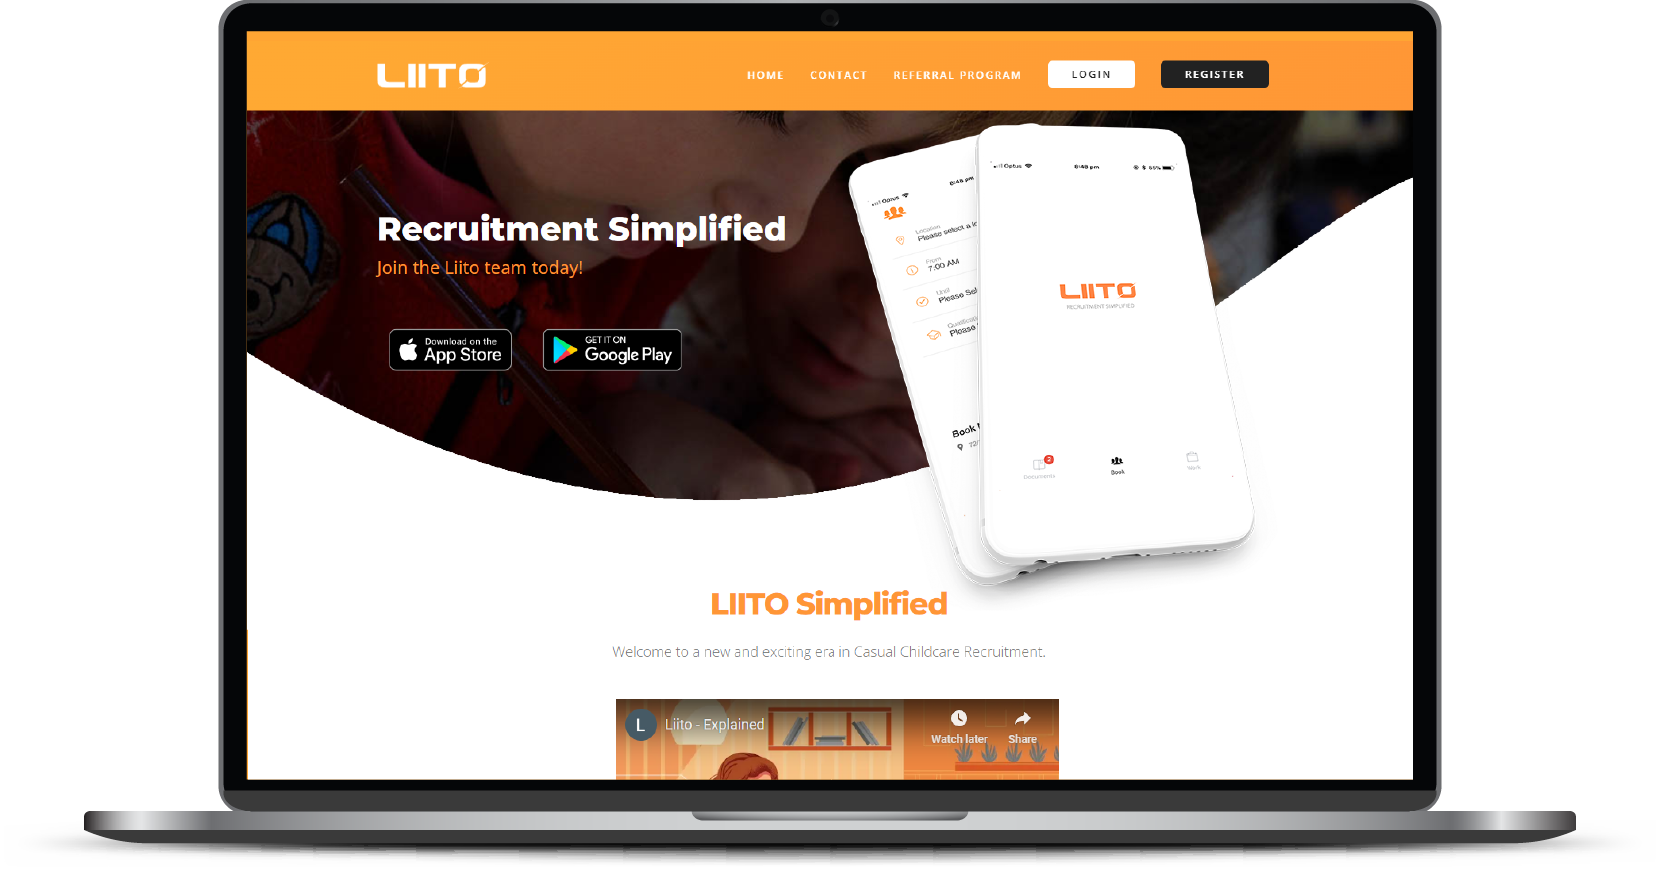 Website and mobile app website - Liito Desktop version